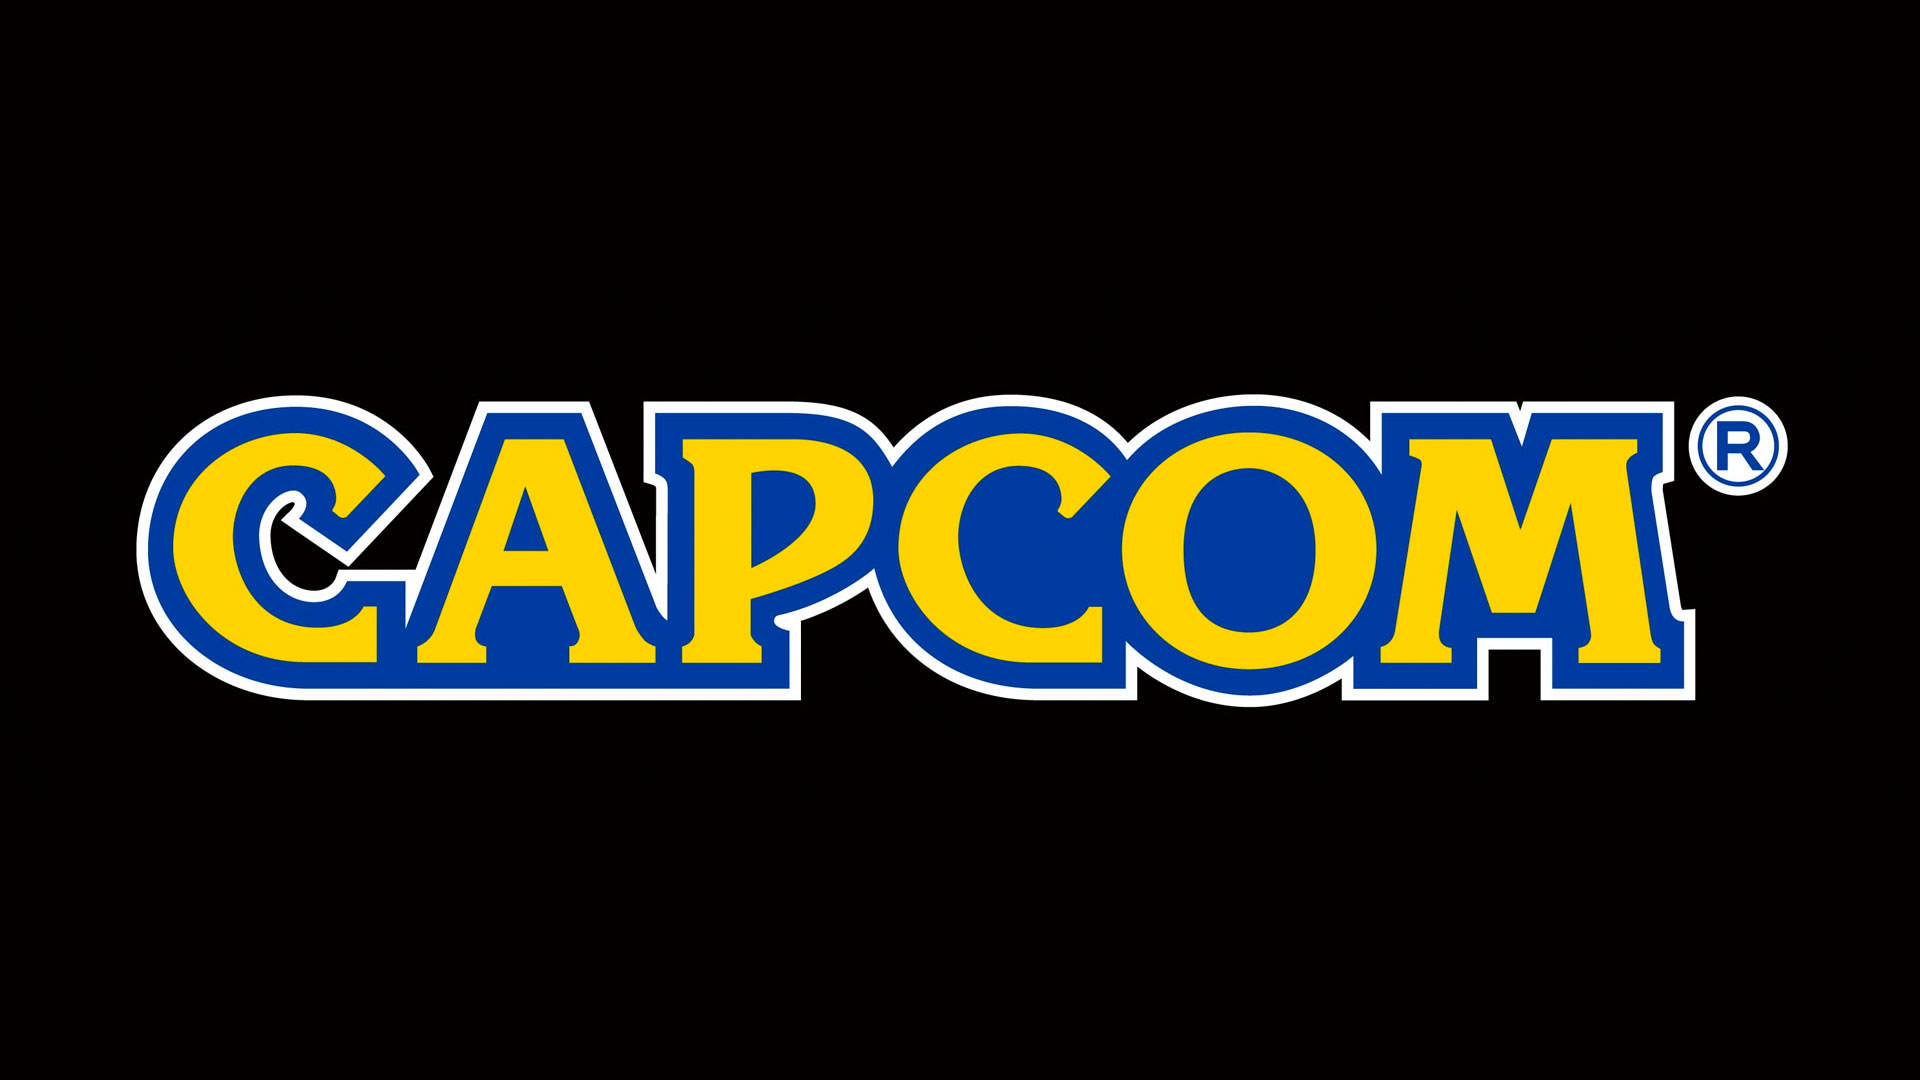 برگزاری شوکیس Capcom Spotlight برای نمایش آثار آتی کپکام